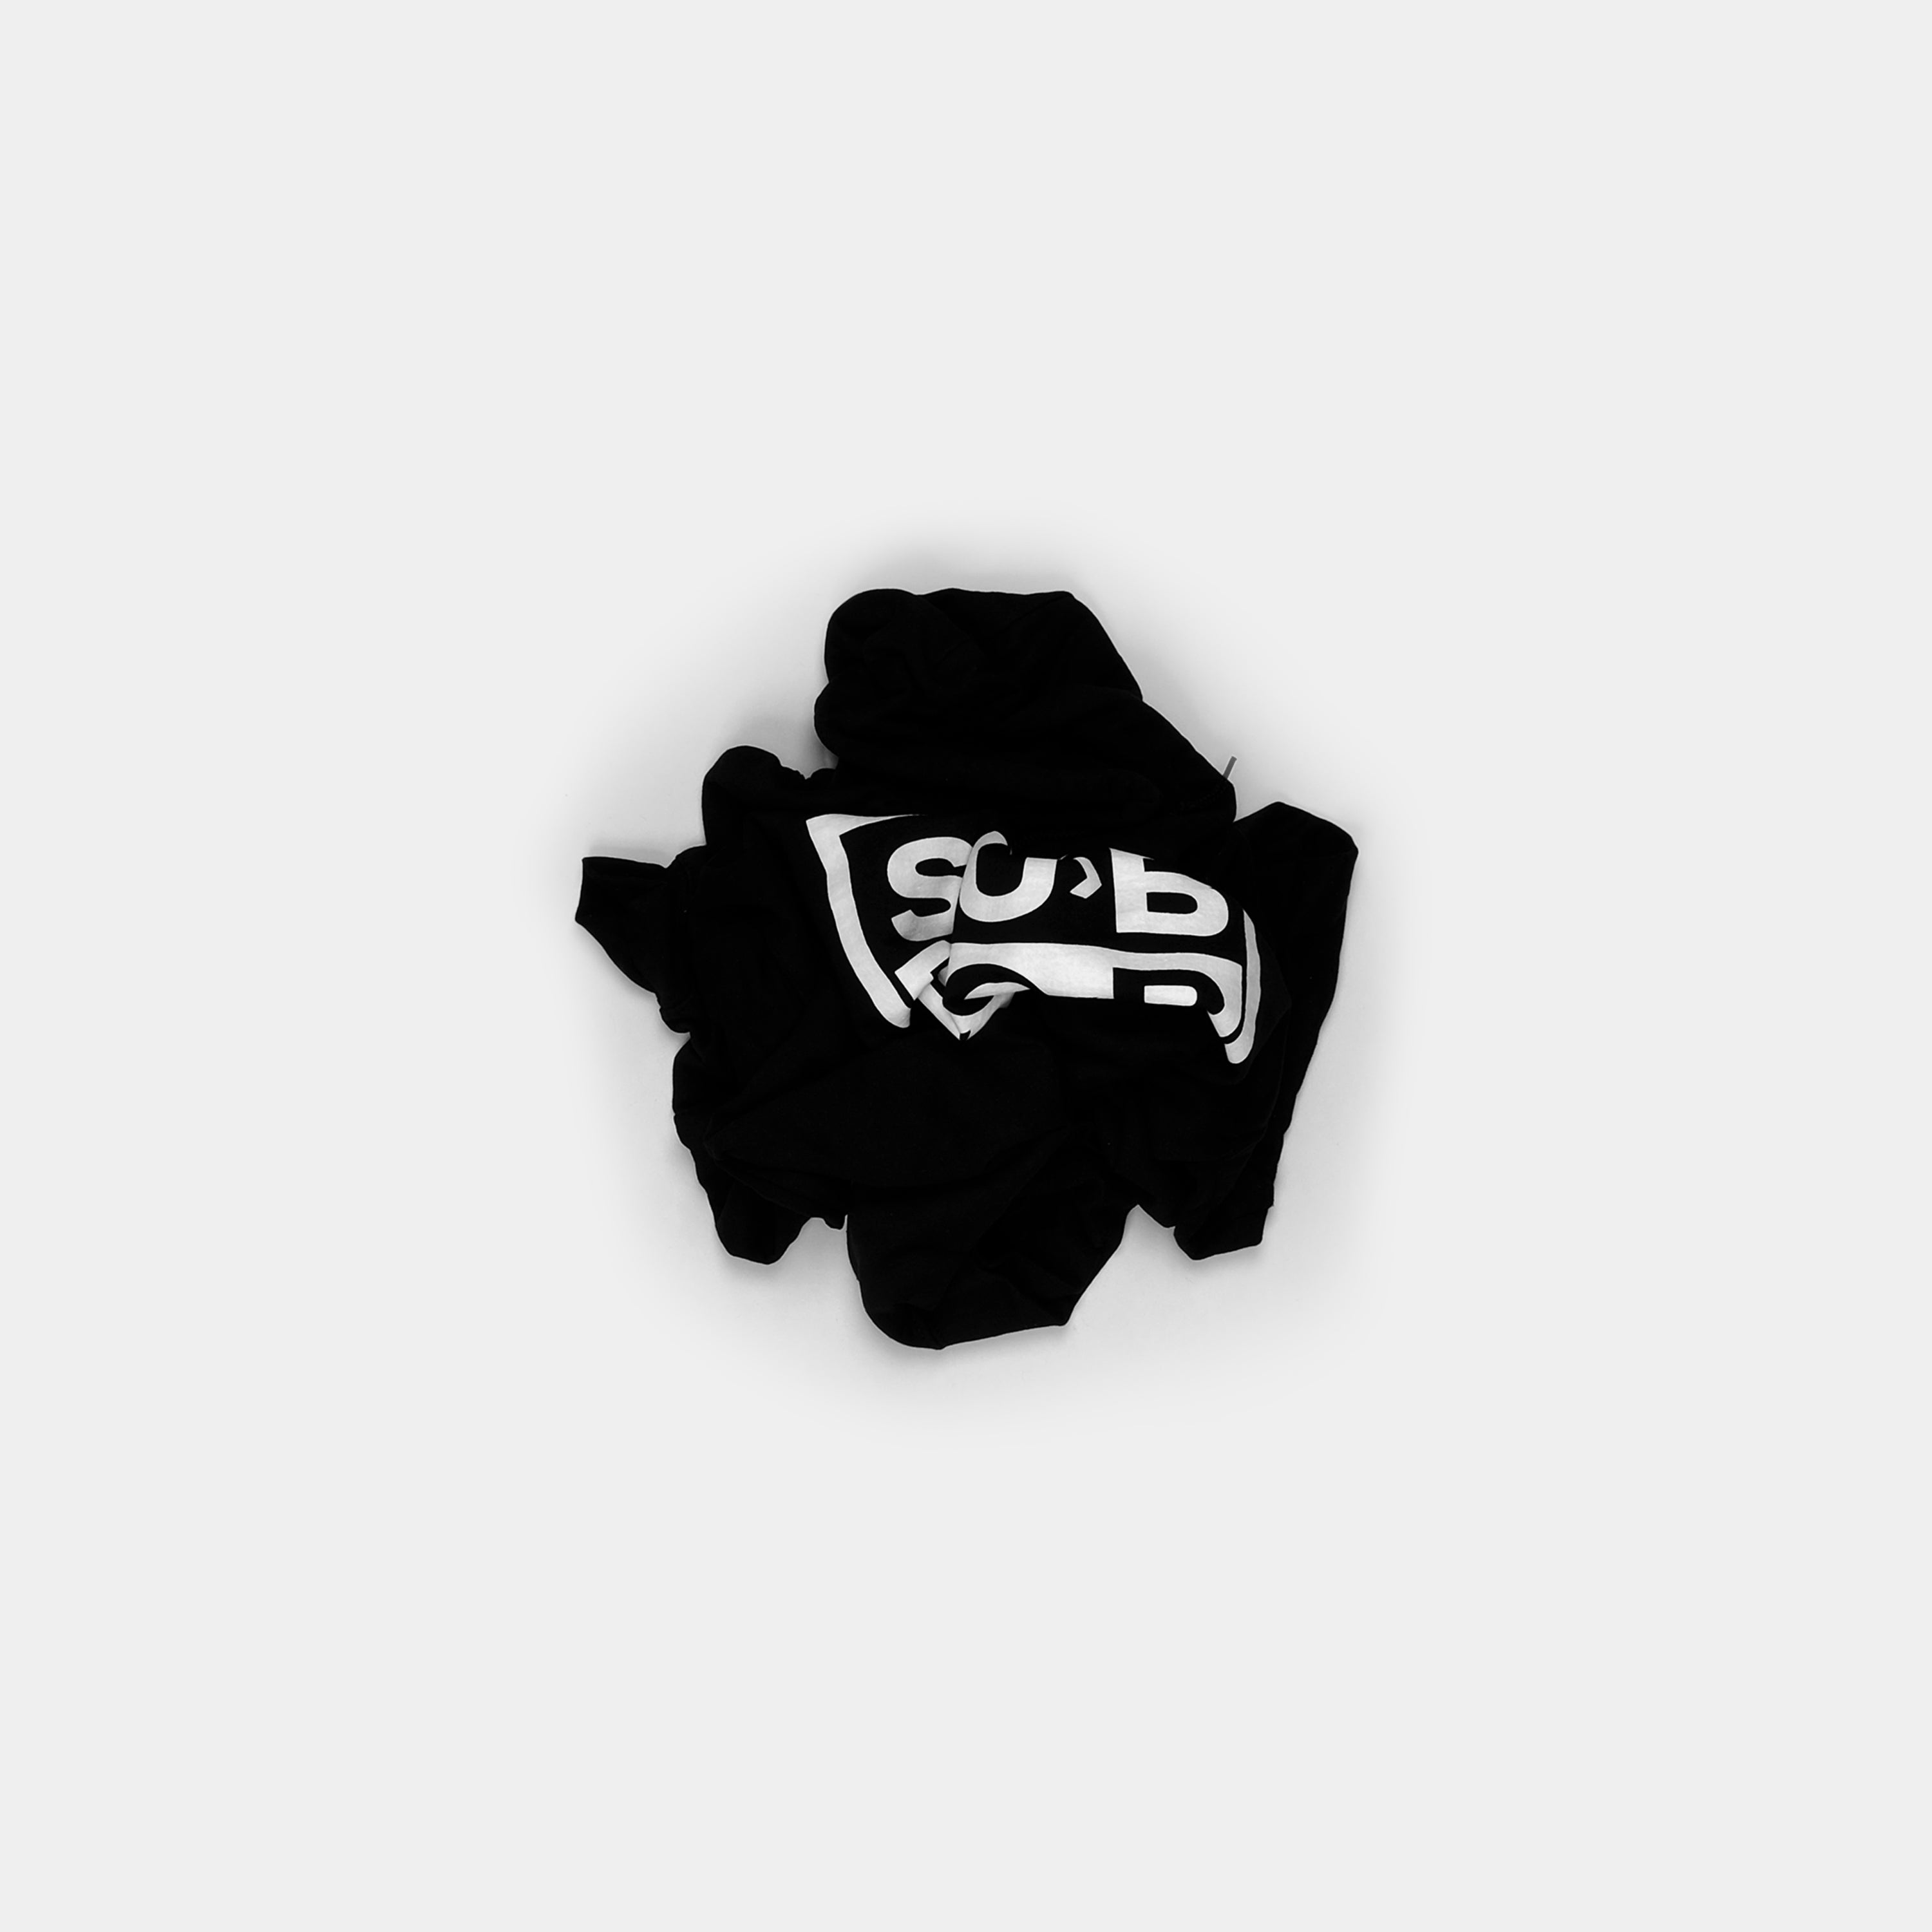 Sub Pop Black & White Logo Hoodie